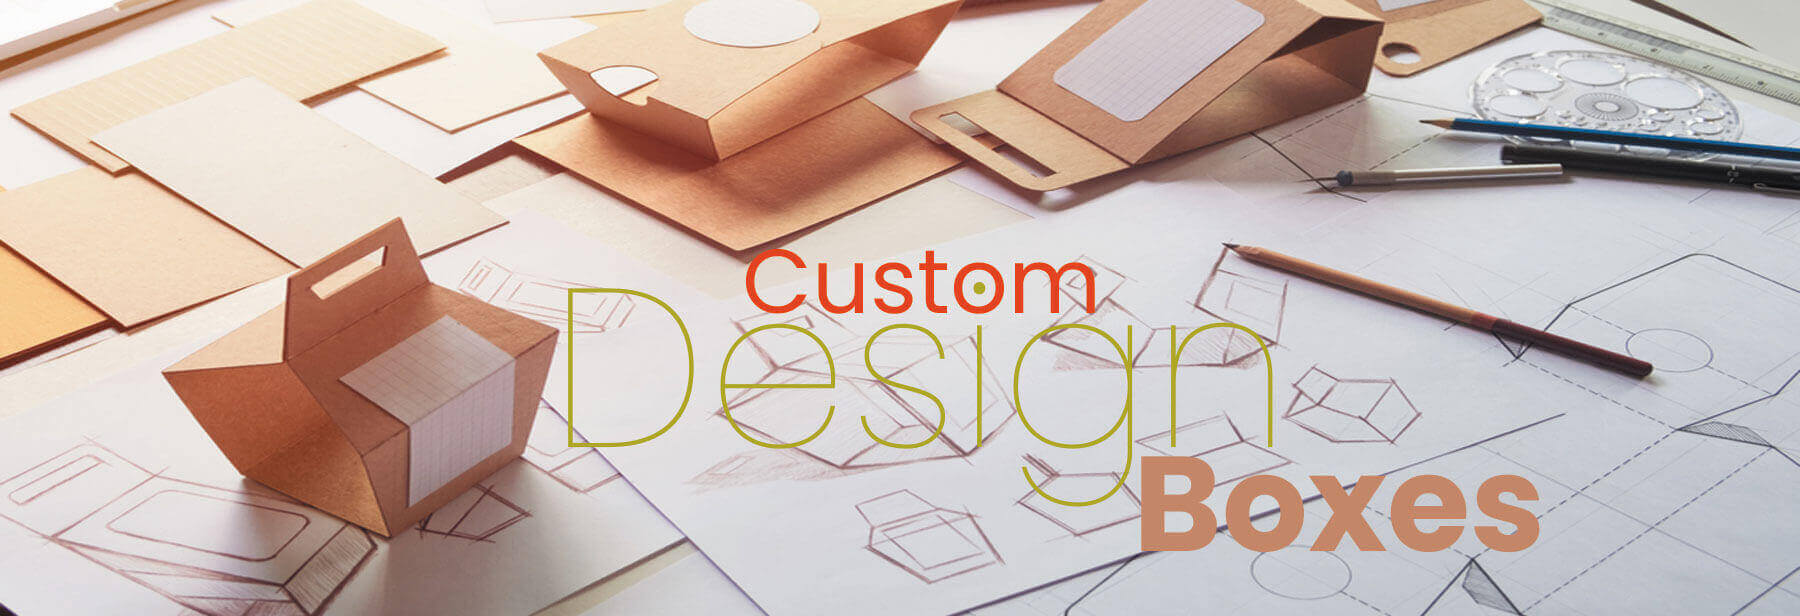 custom-design-boxes1